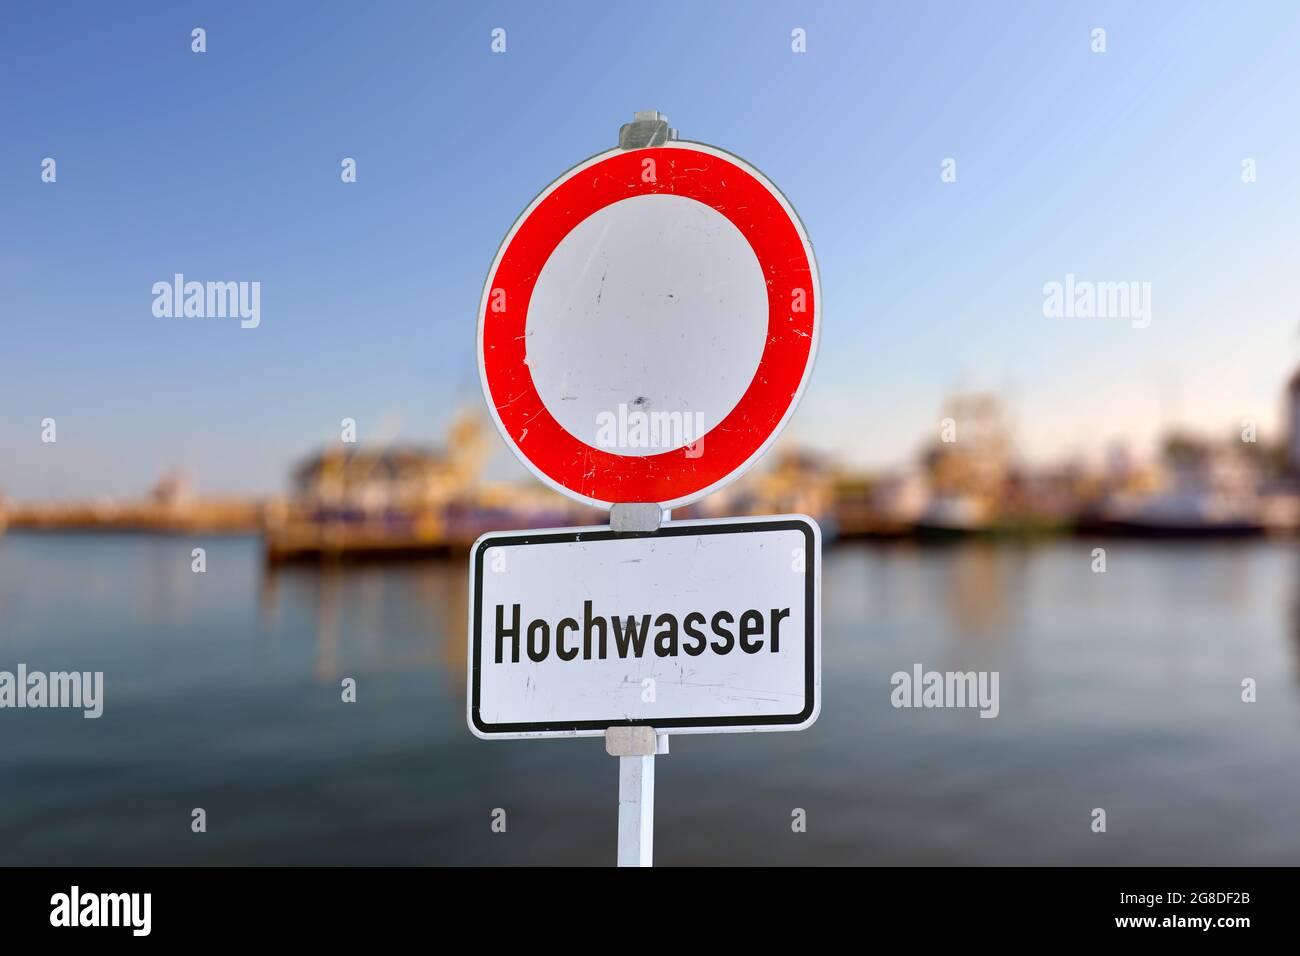 Cartello tedesco con il cerchio rosso e il testo che dice "Hochwasser" Foto Stock